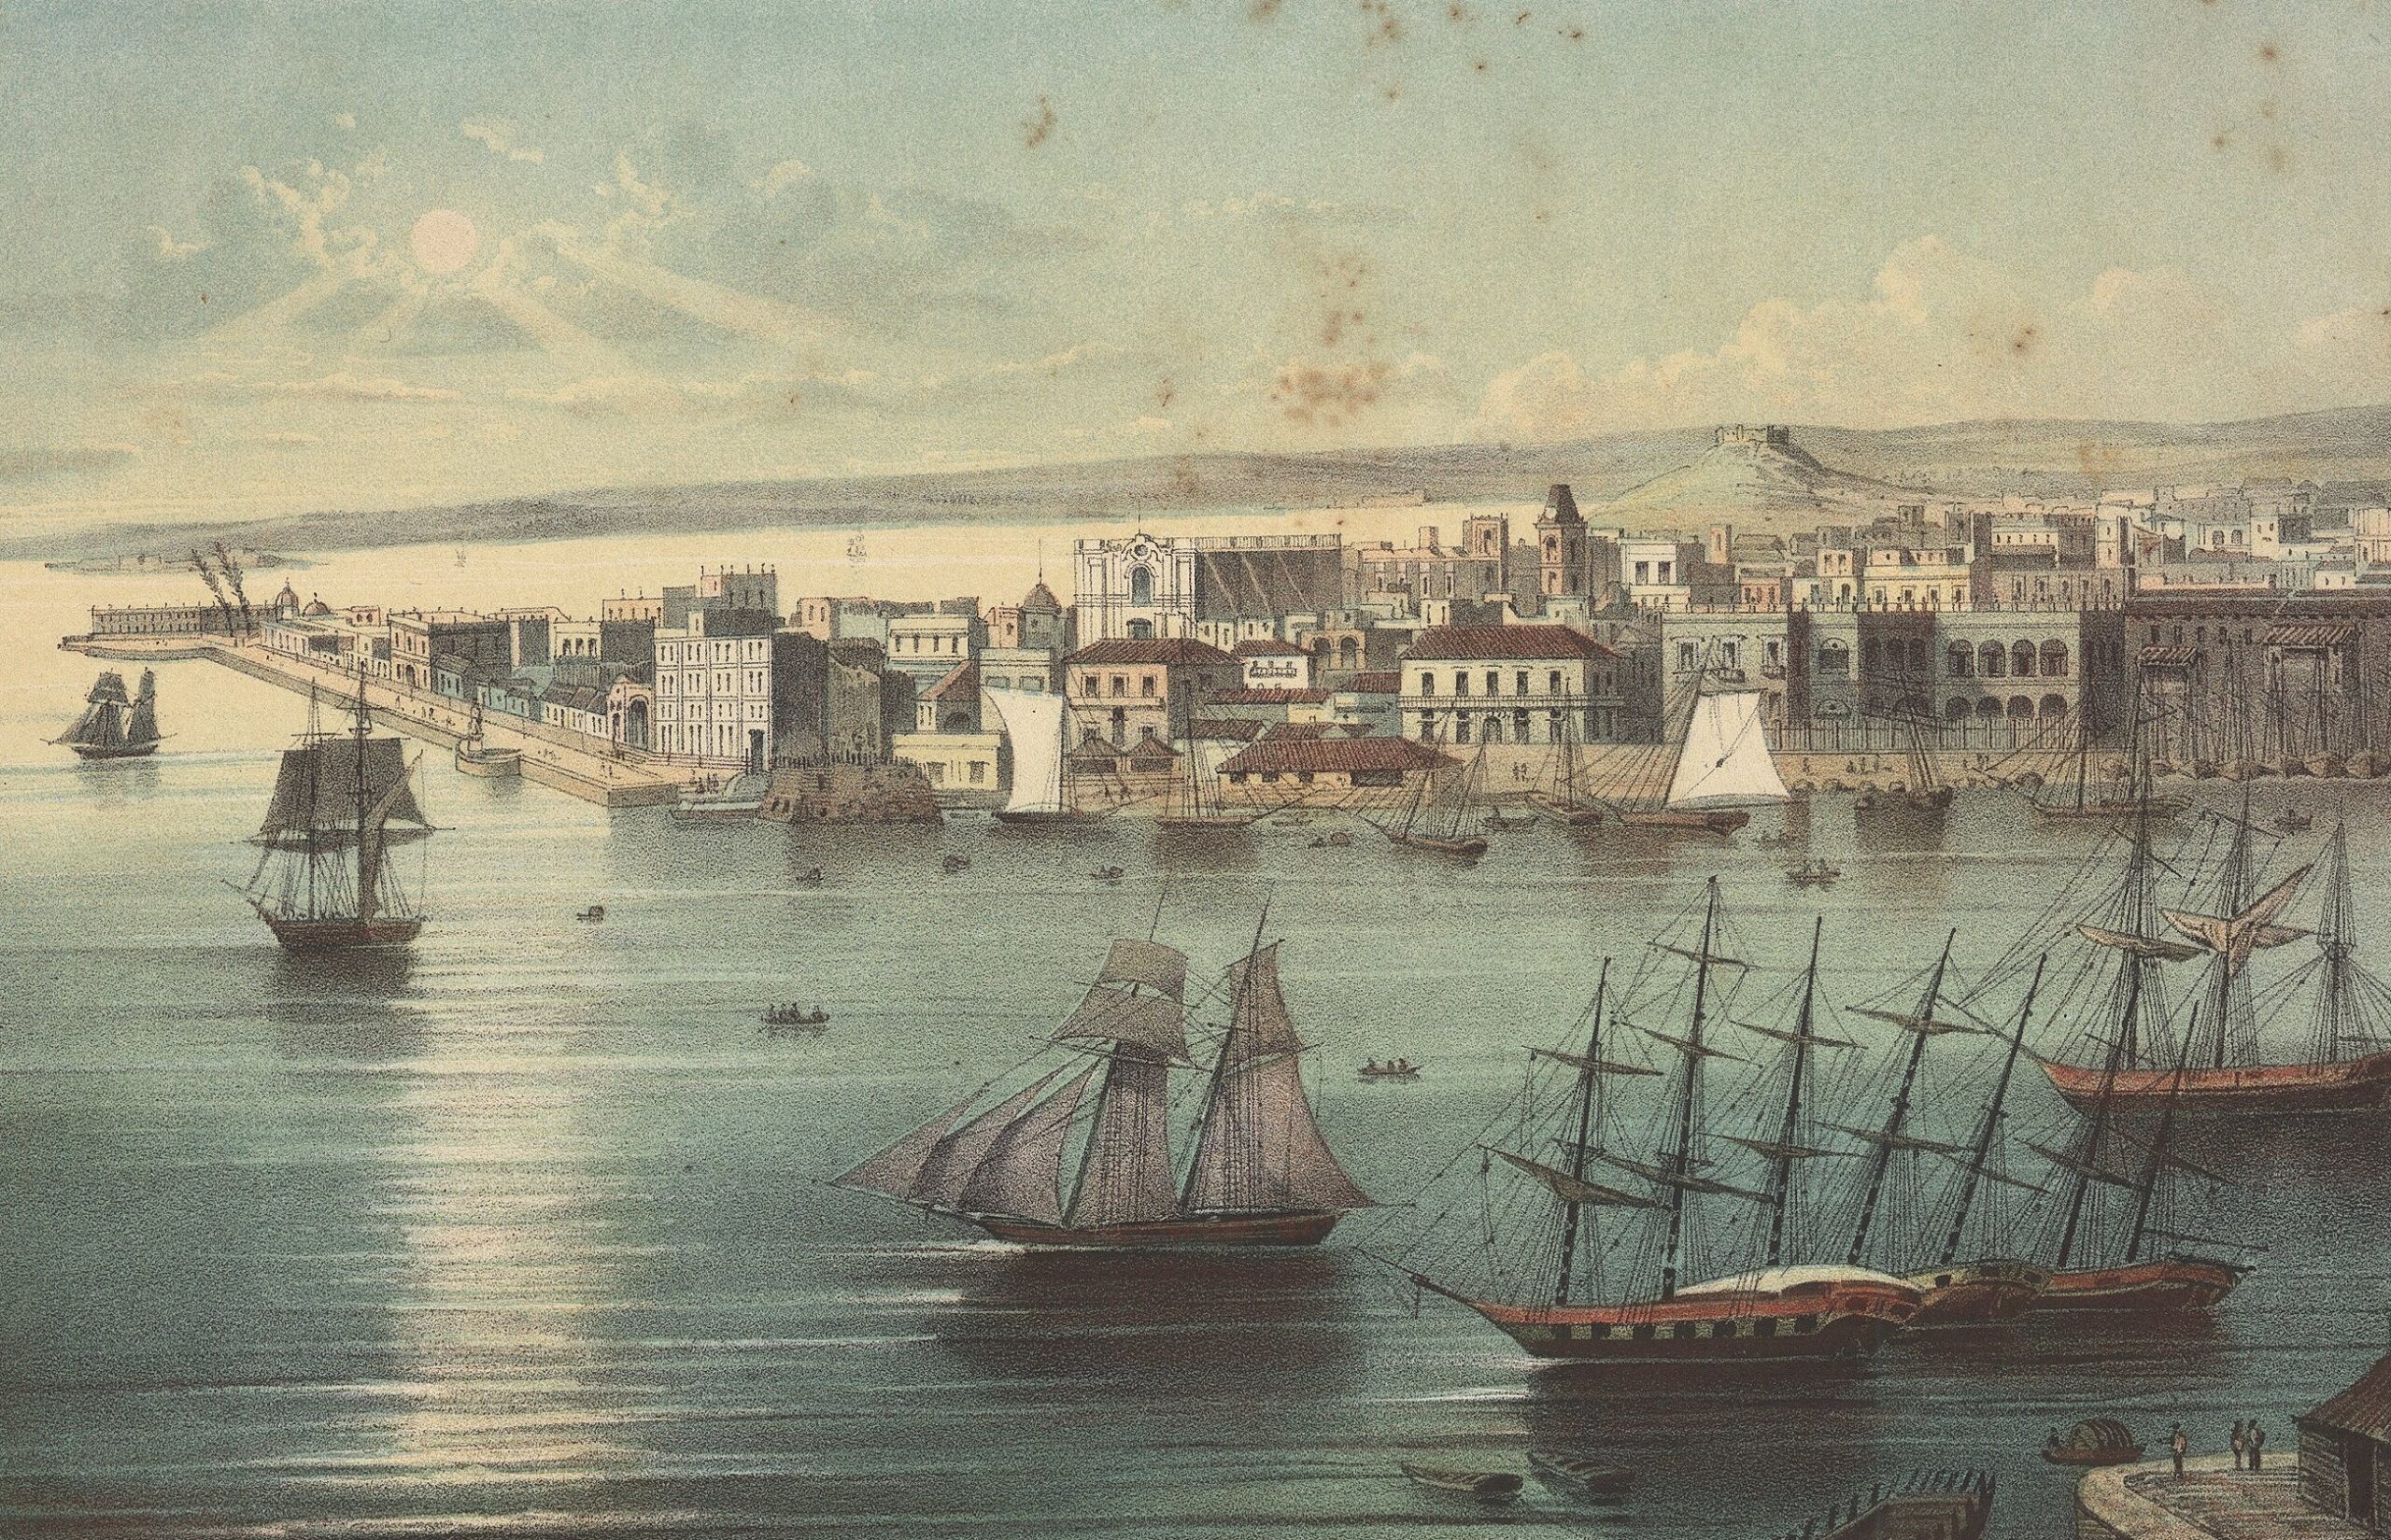 Vaixells i embarcacions al Port de l'Havana. 1900 ca